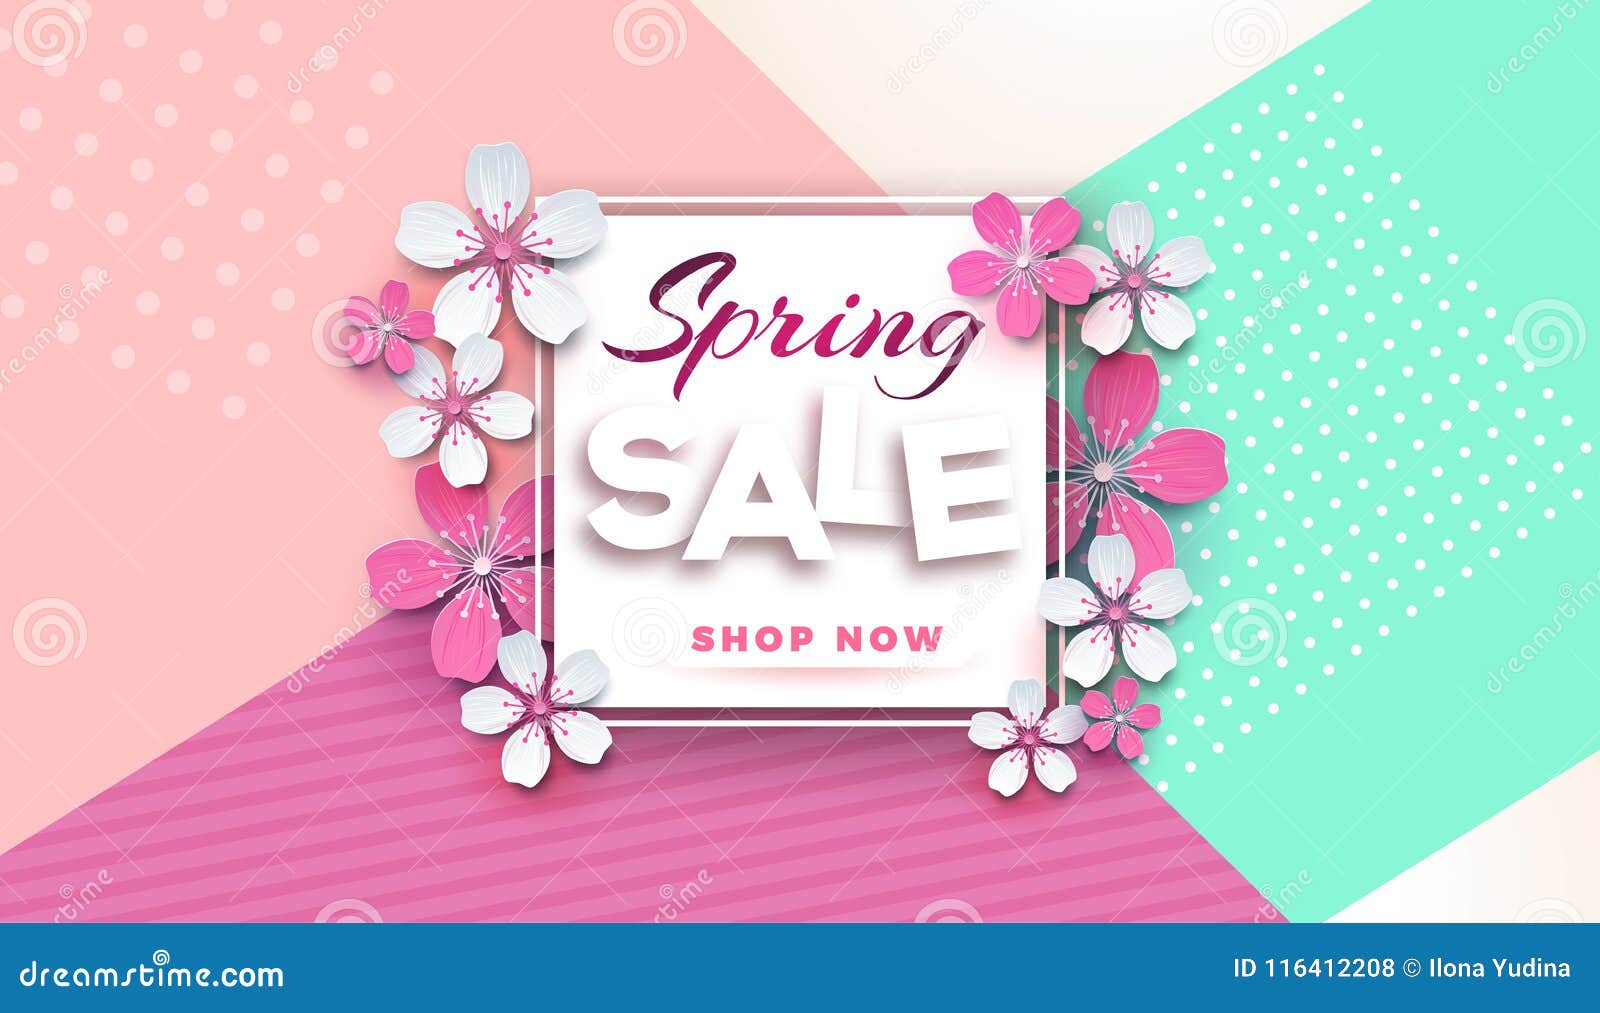 Розовый sale111121 цена. Sale розовый. Spring sale. Spring sale Pink. Наклейка Сейл розовая.